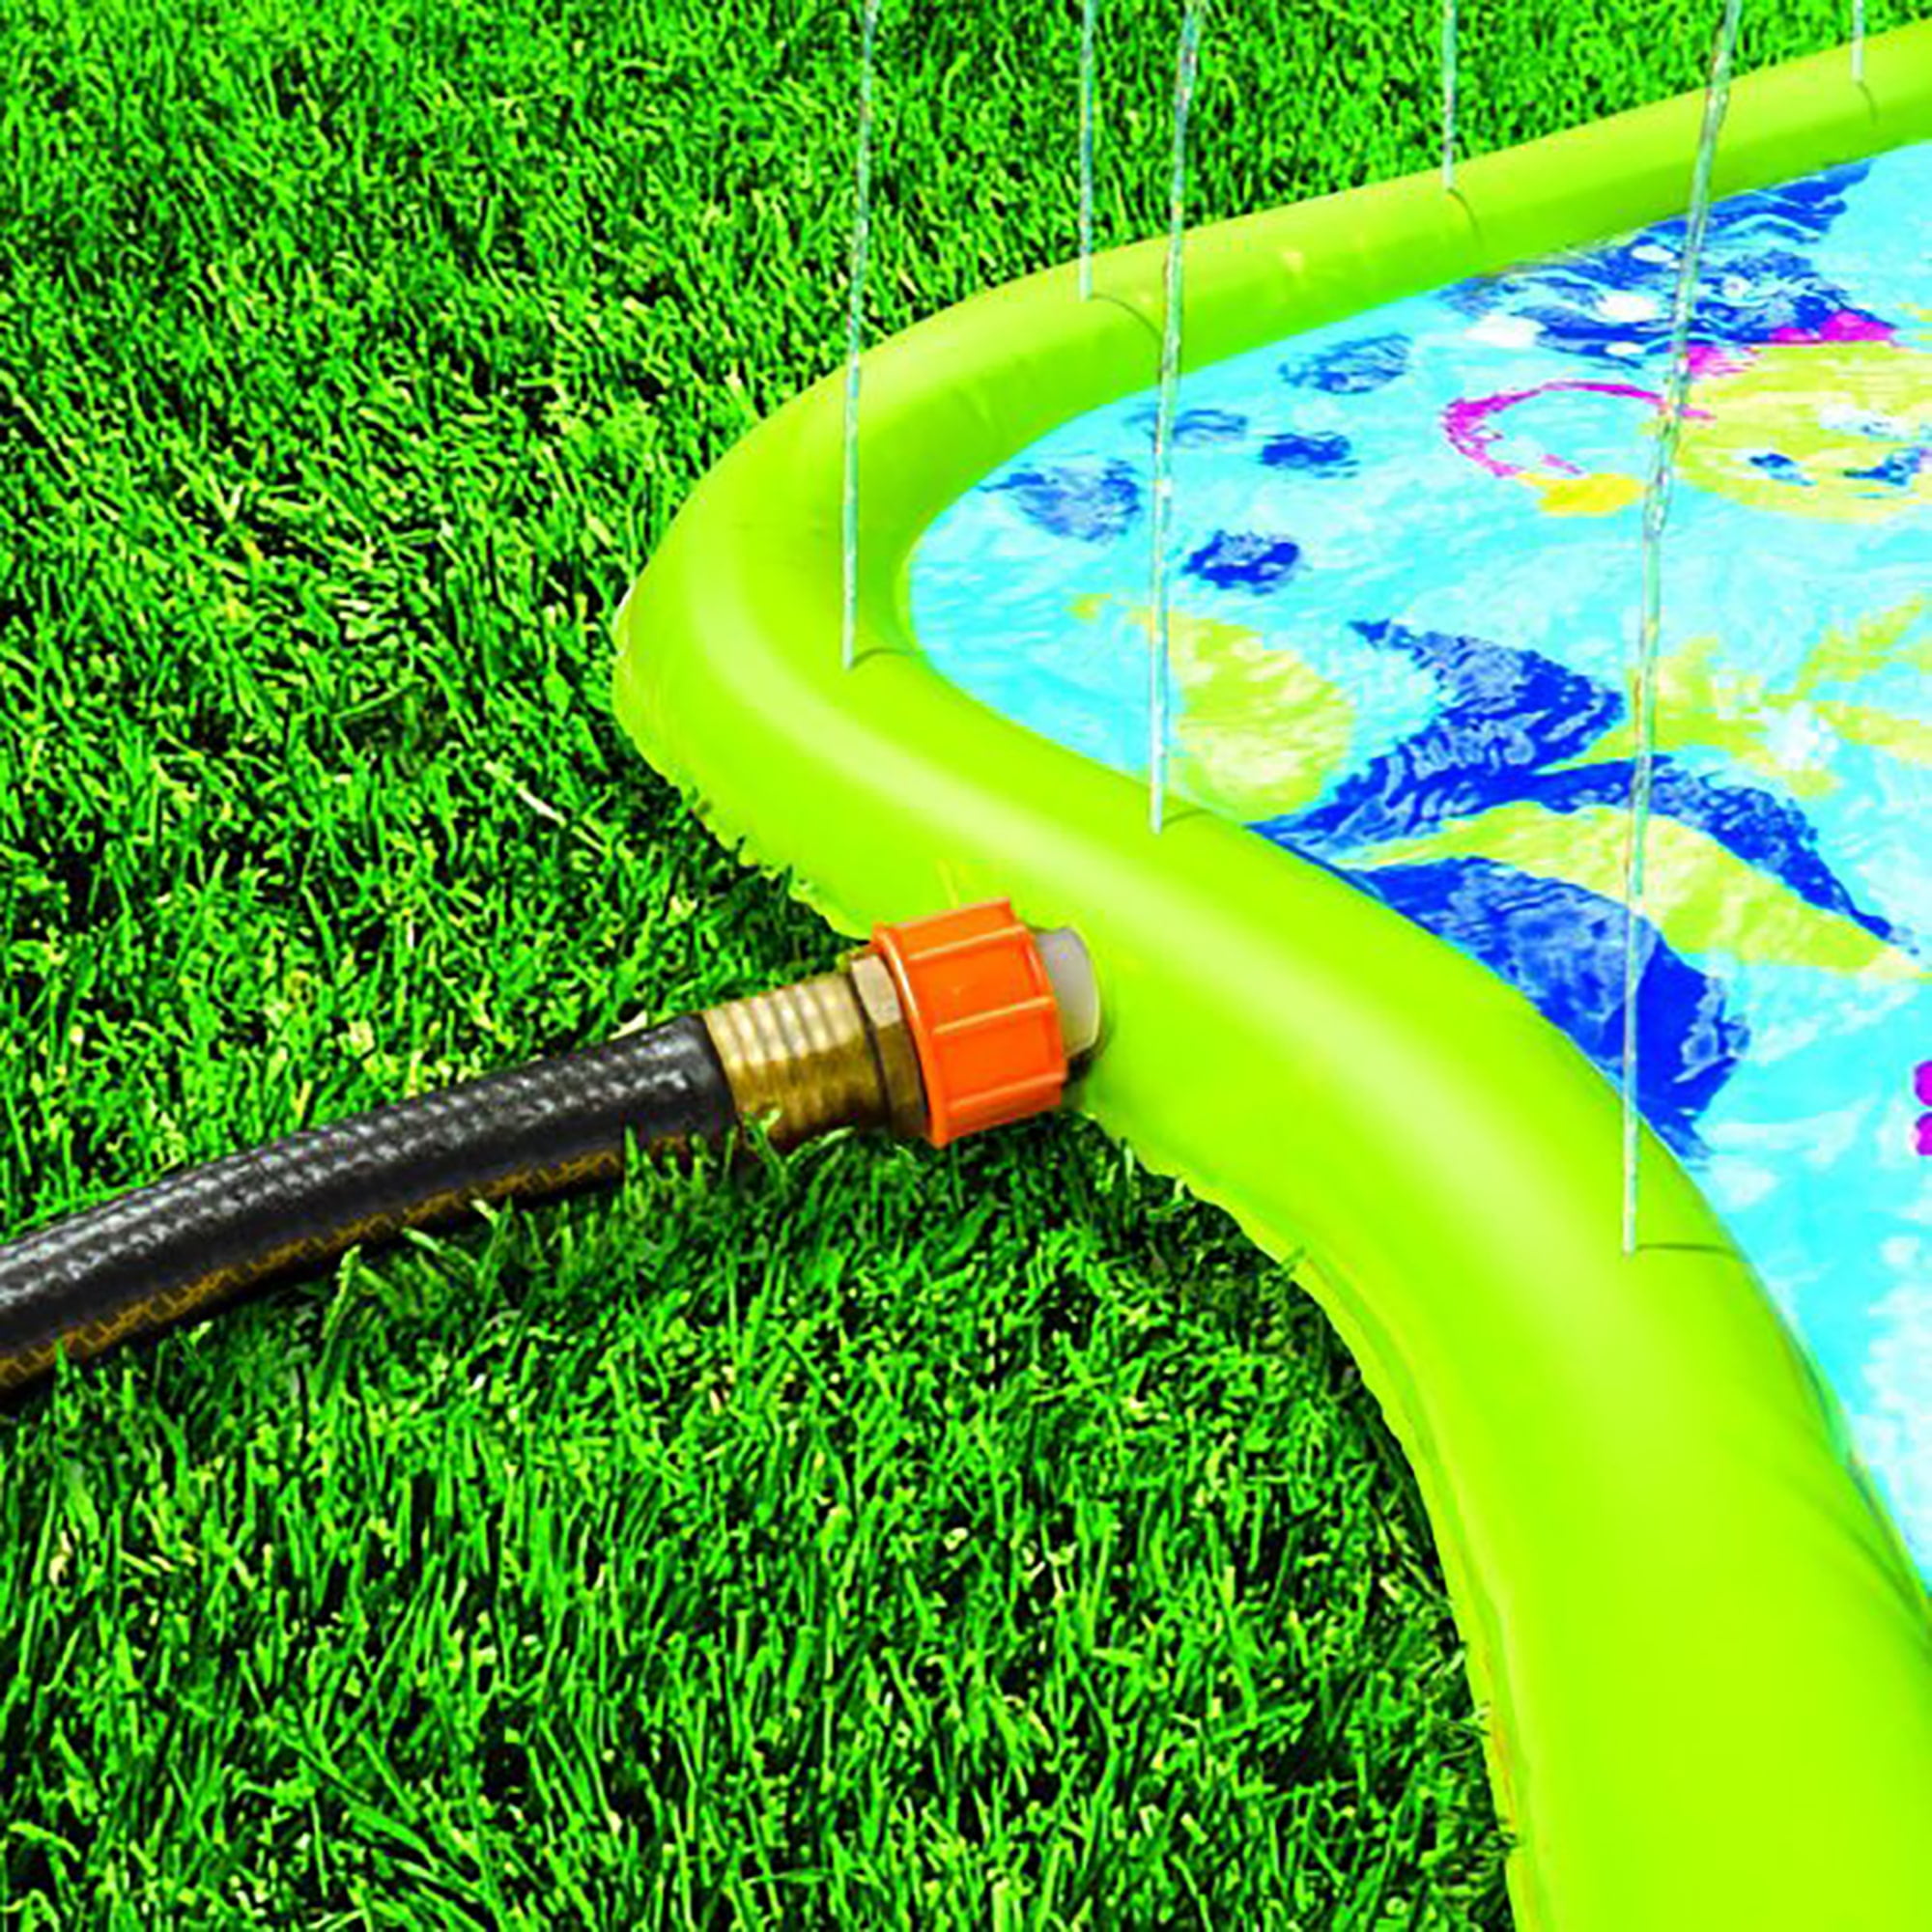 Piscine pour enfants Splish Splash de BANZAI multicolore de 90 po L. x 52  po l. avec toboggan et jets d'eau 99742